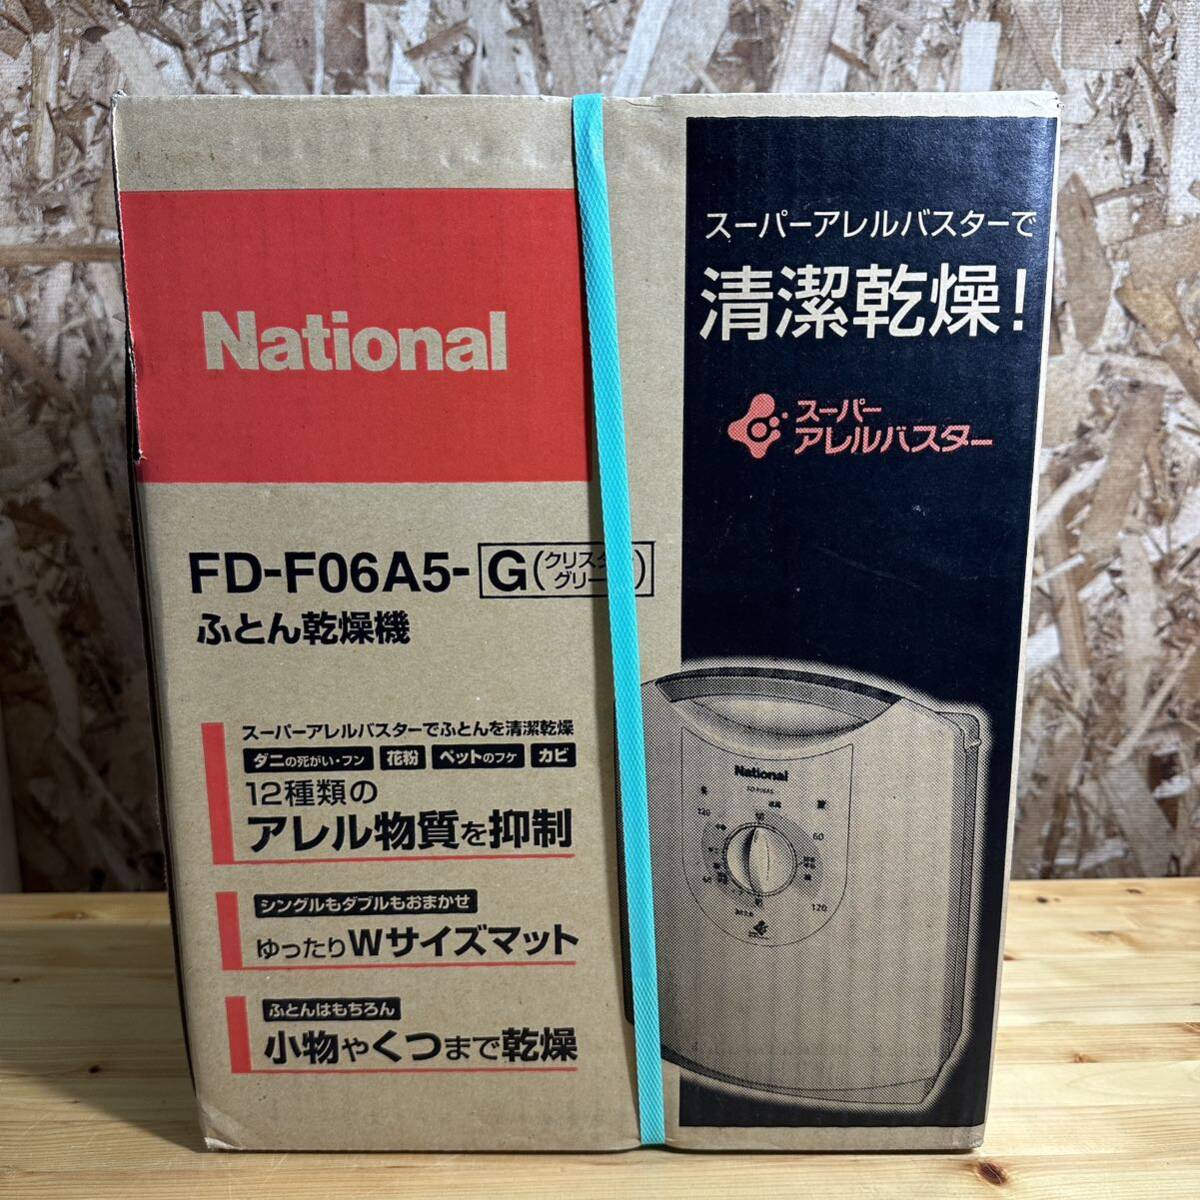 National ナショナル ふとん乾燥機 FD-F06A5-G 小物 靴 乾燥OK 家電 電化製品 インテリア 未使用品の画像1